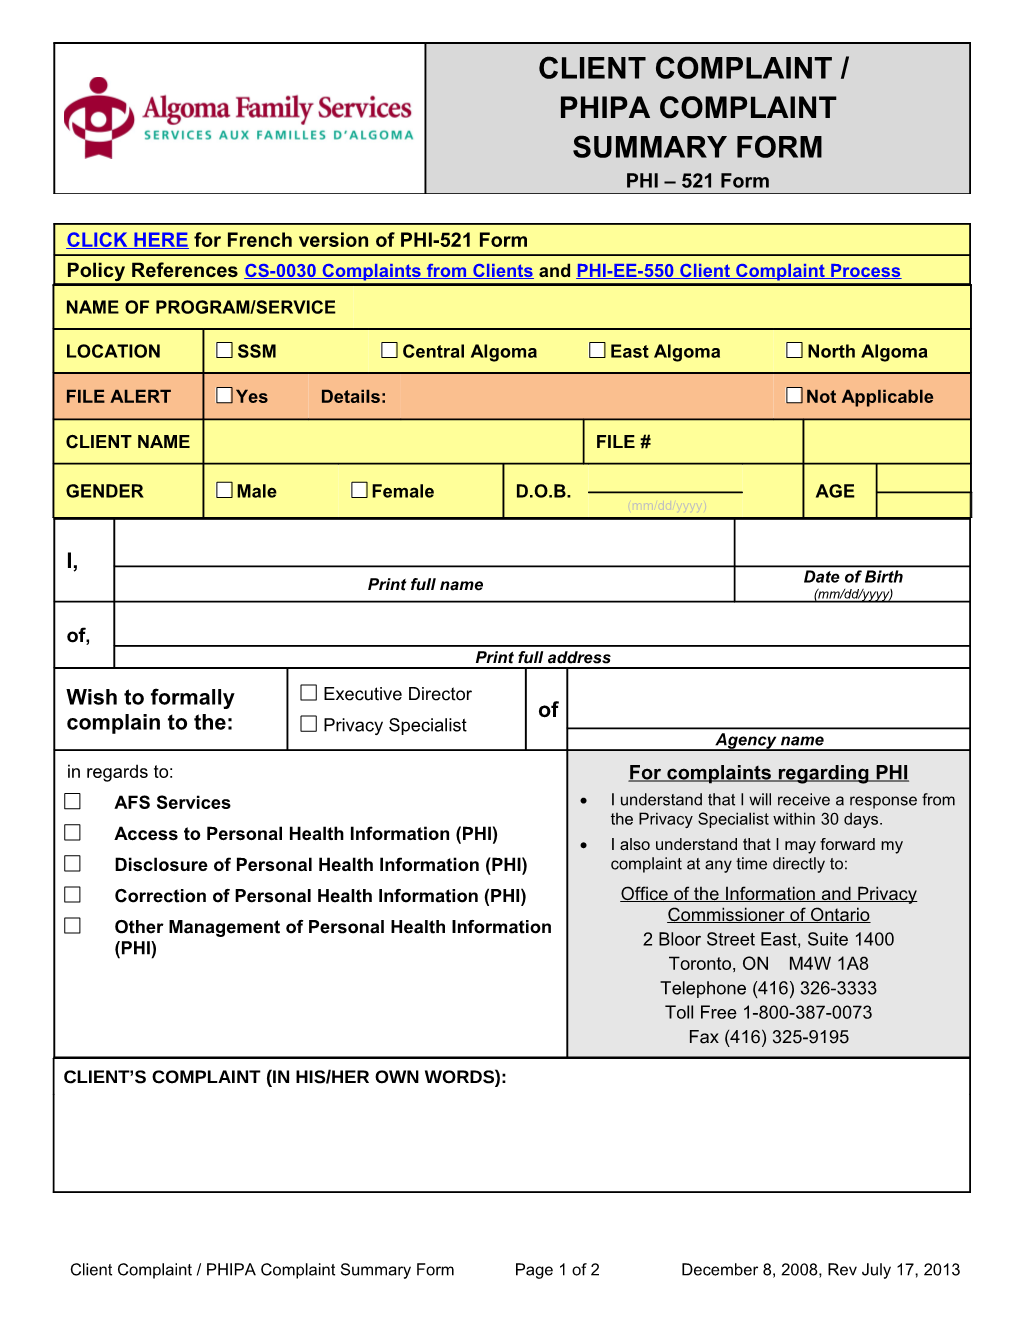 PHI-521 FORM Client Complaint-PHIPA Complaint Form